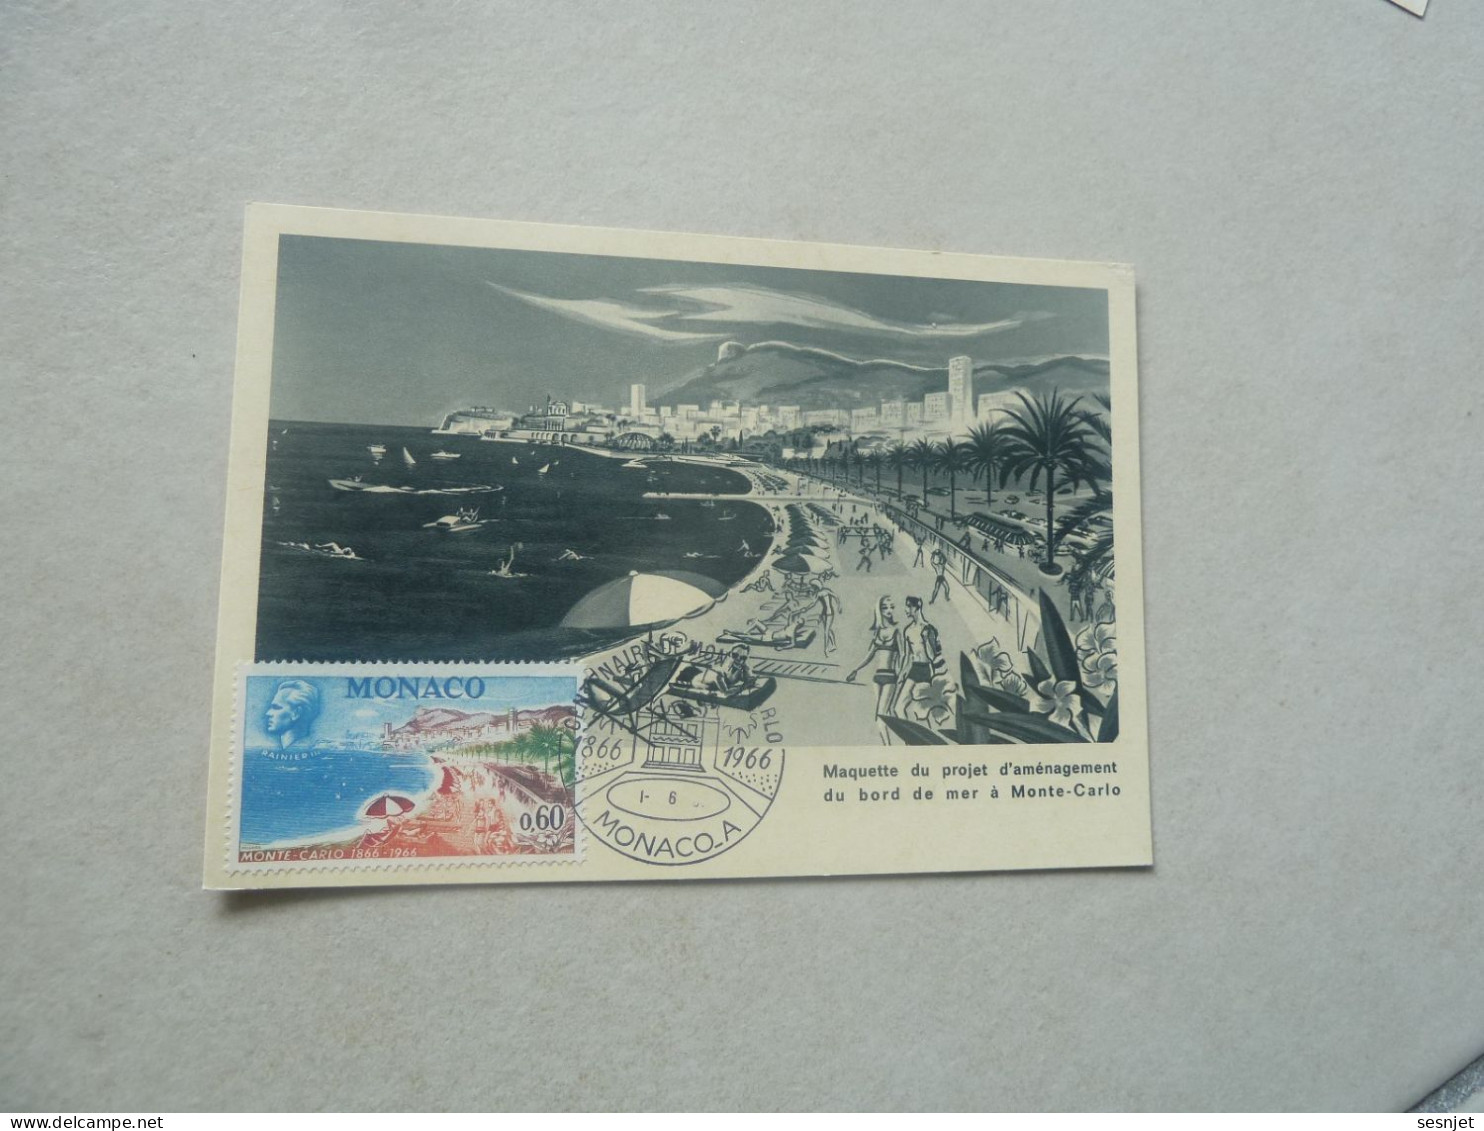 Monaco - Maquette Du Projet D'Aménagement - 0f.60 - Yt 694 - Carte Premier Jour D'Emission - Année 1966 - - Cartes-Maximum (CM)